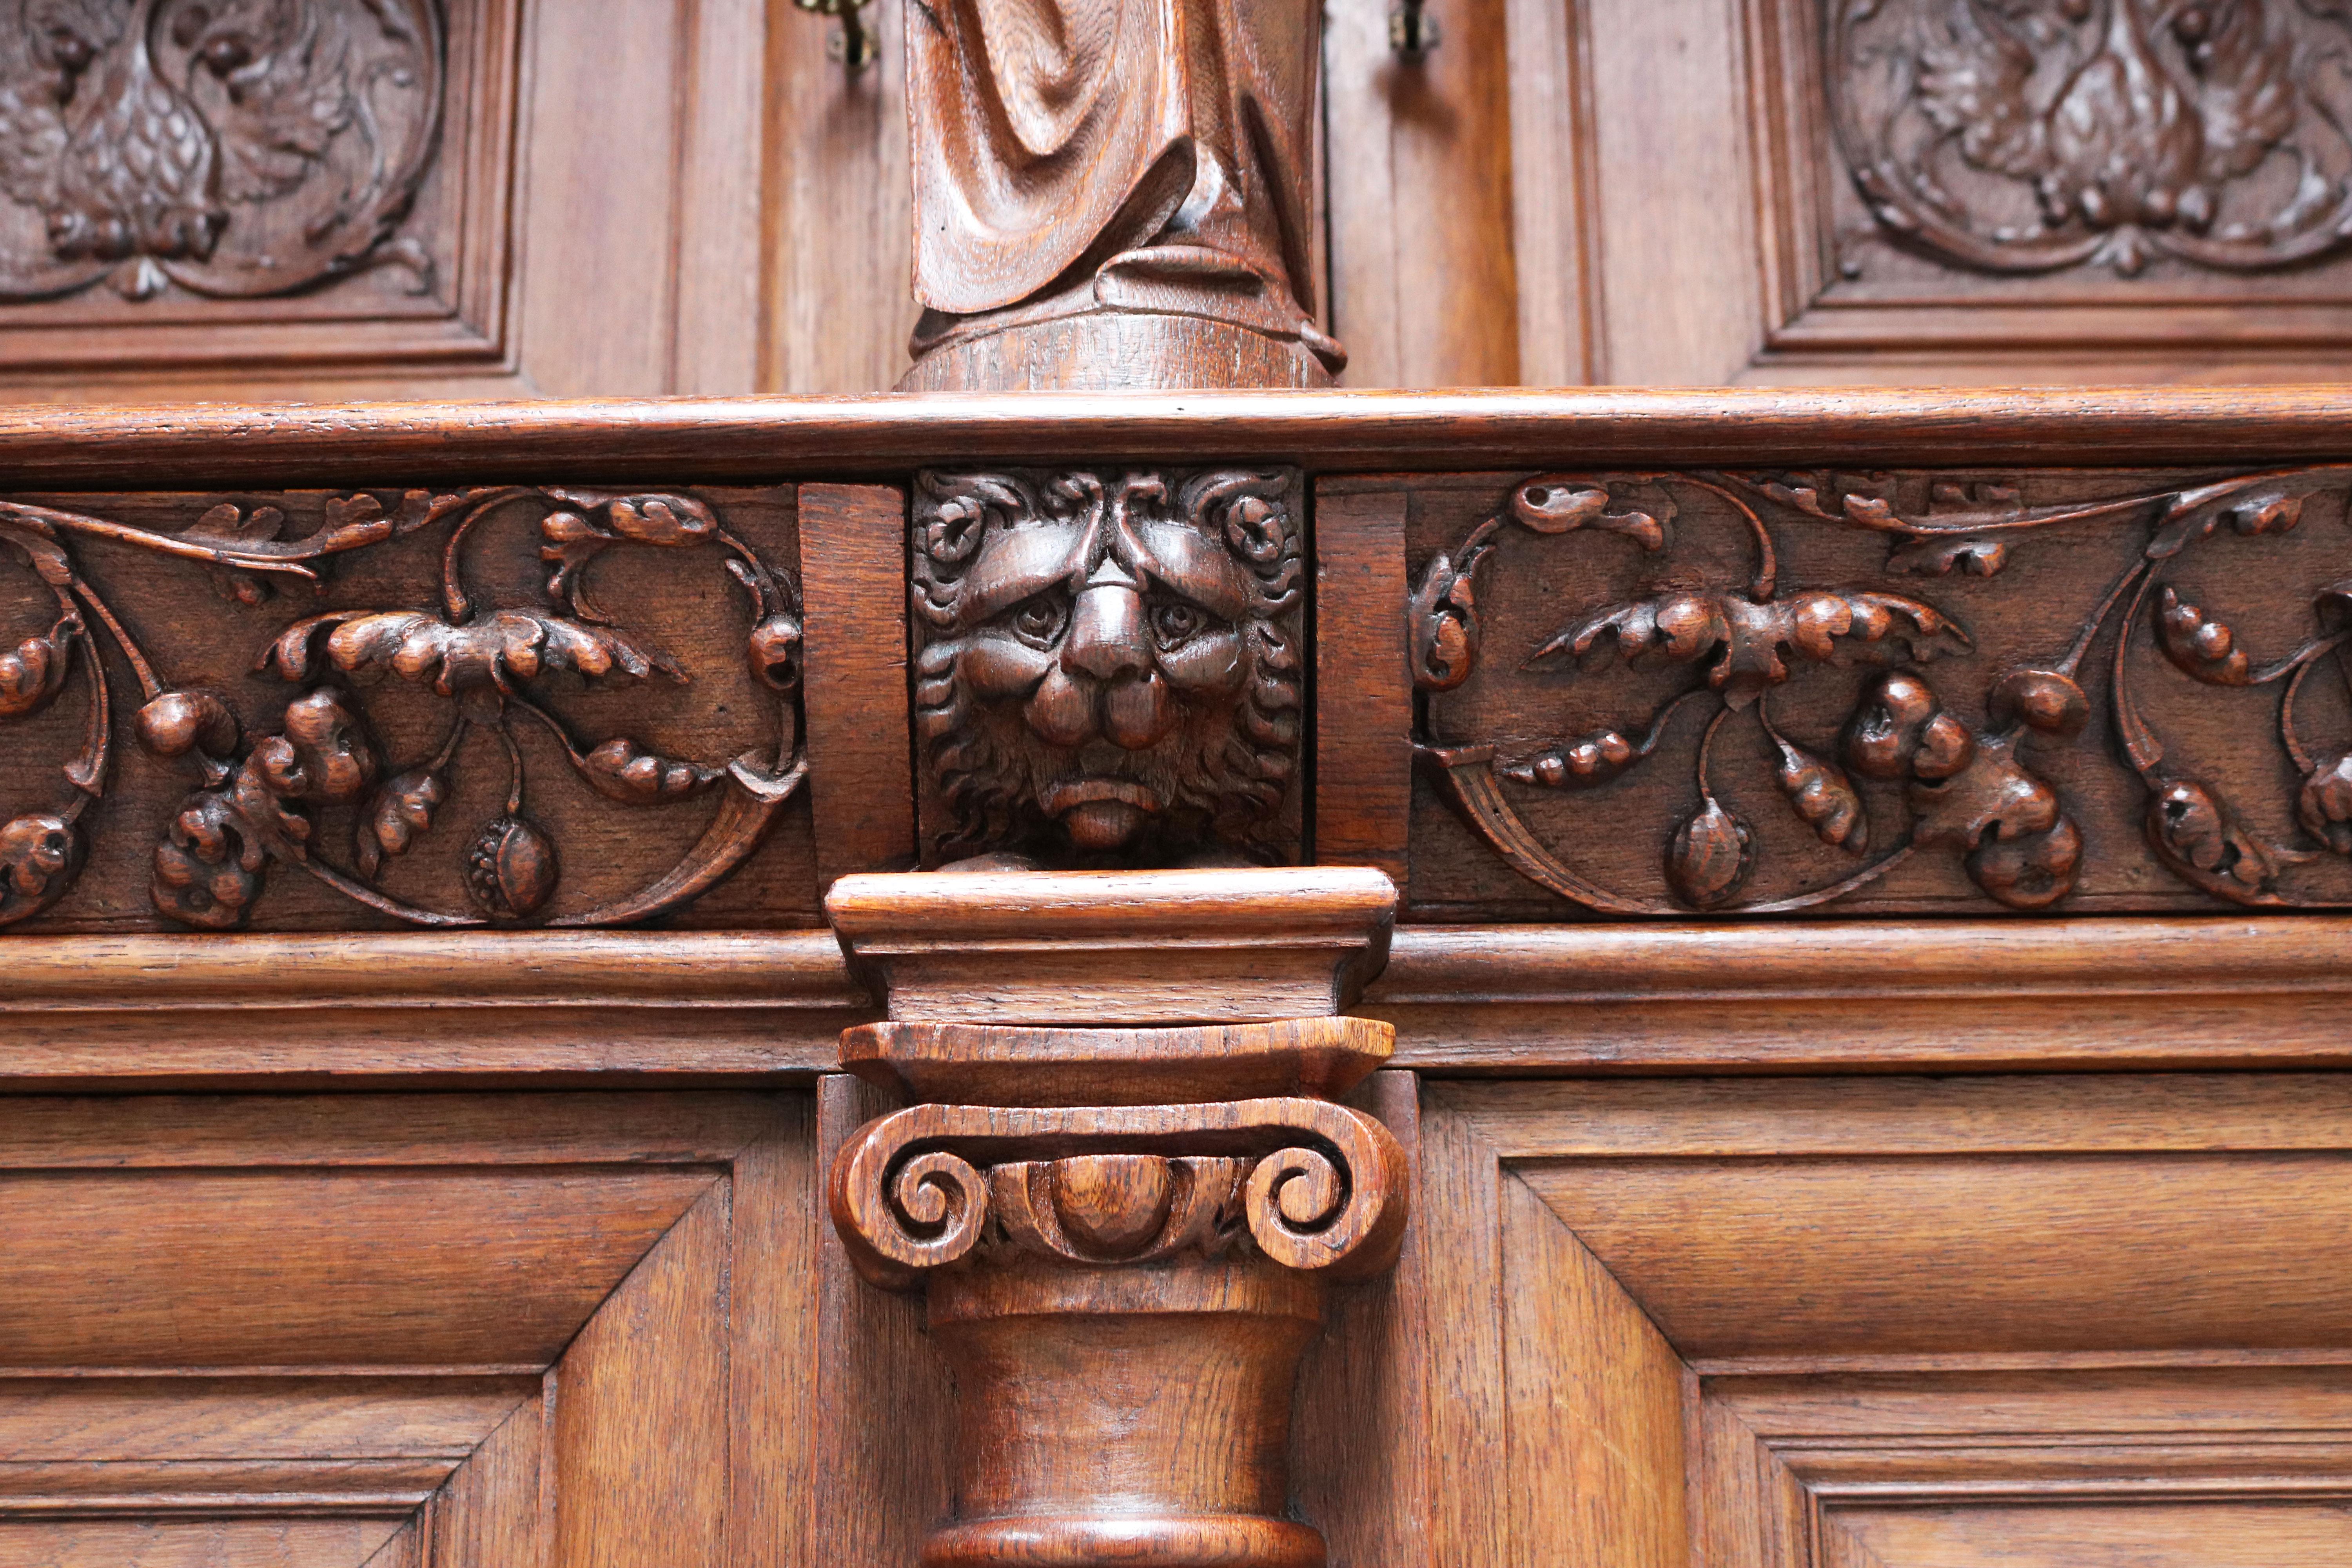 Impressive Dutch Renaissance Revival 19th Century Cabinet Carved Angels & Lions For Sale 7